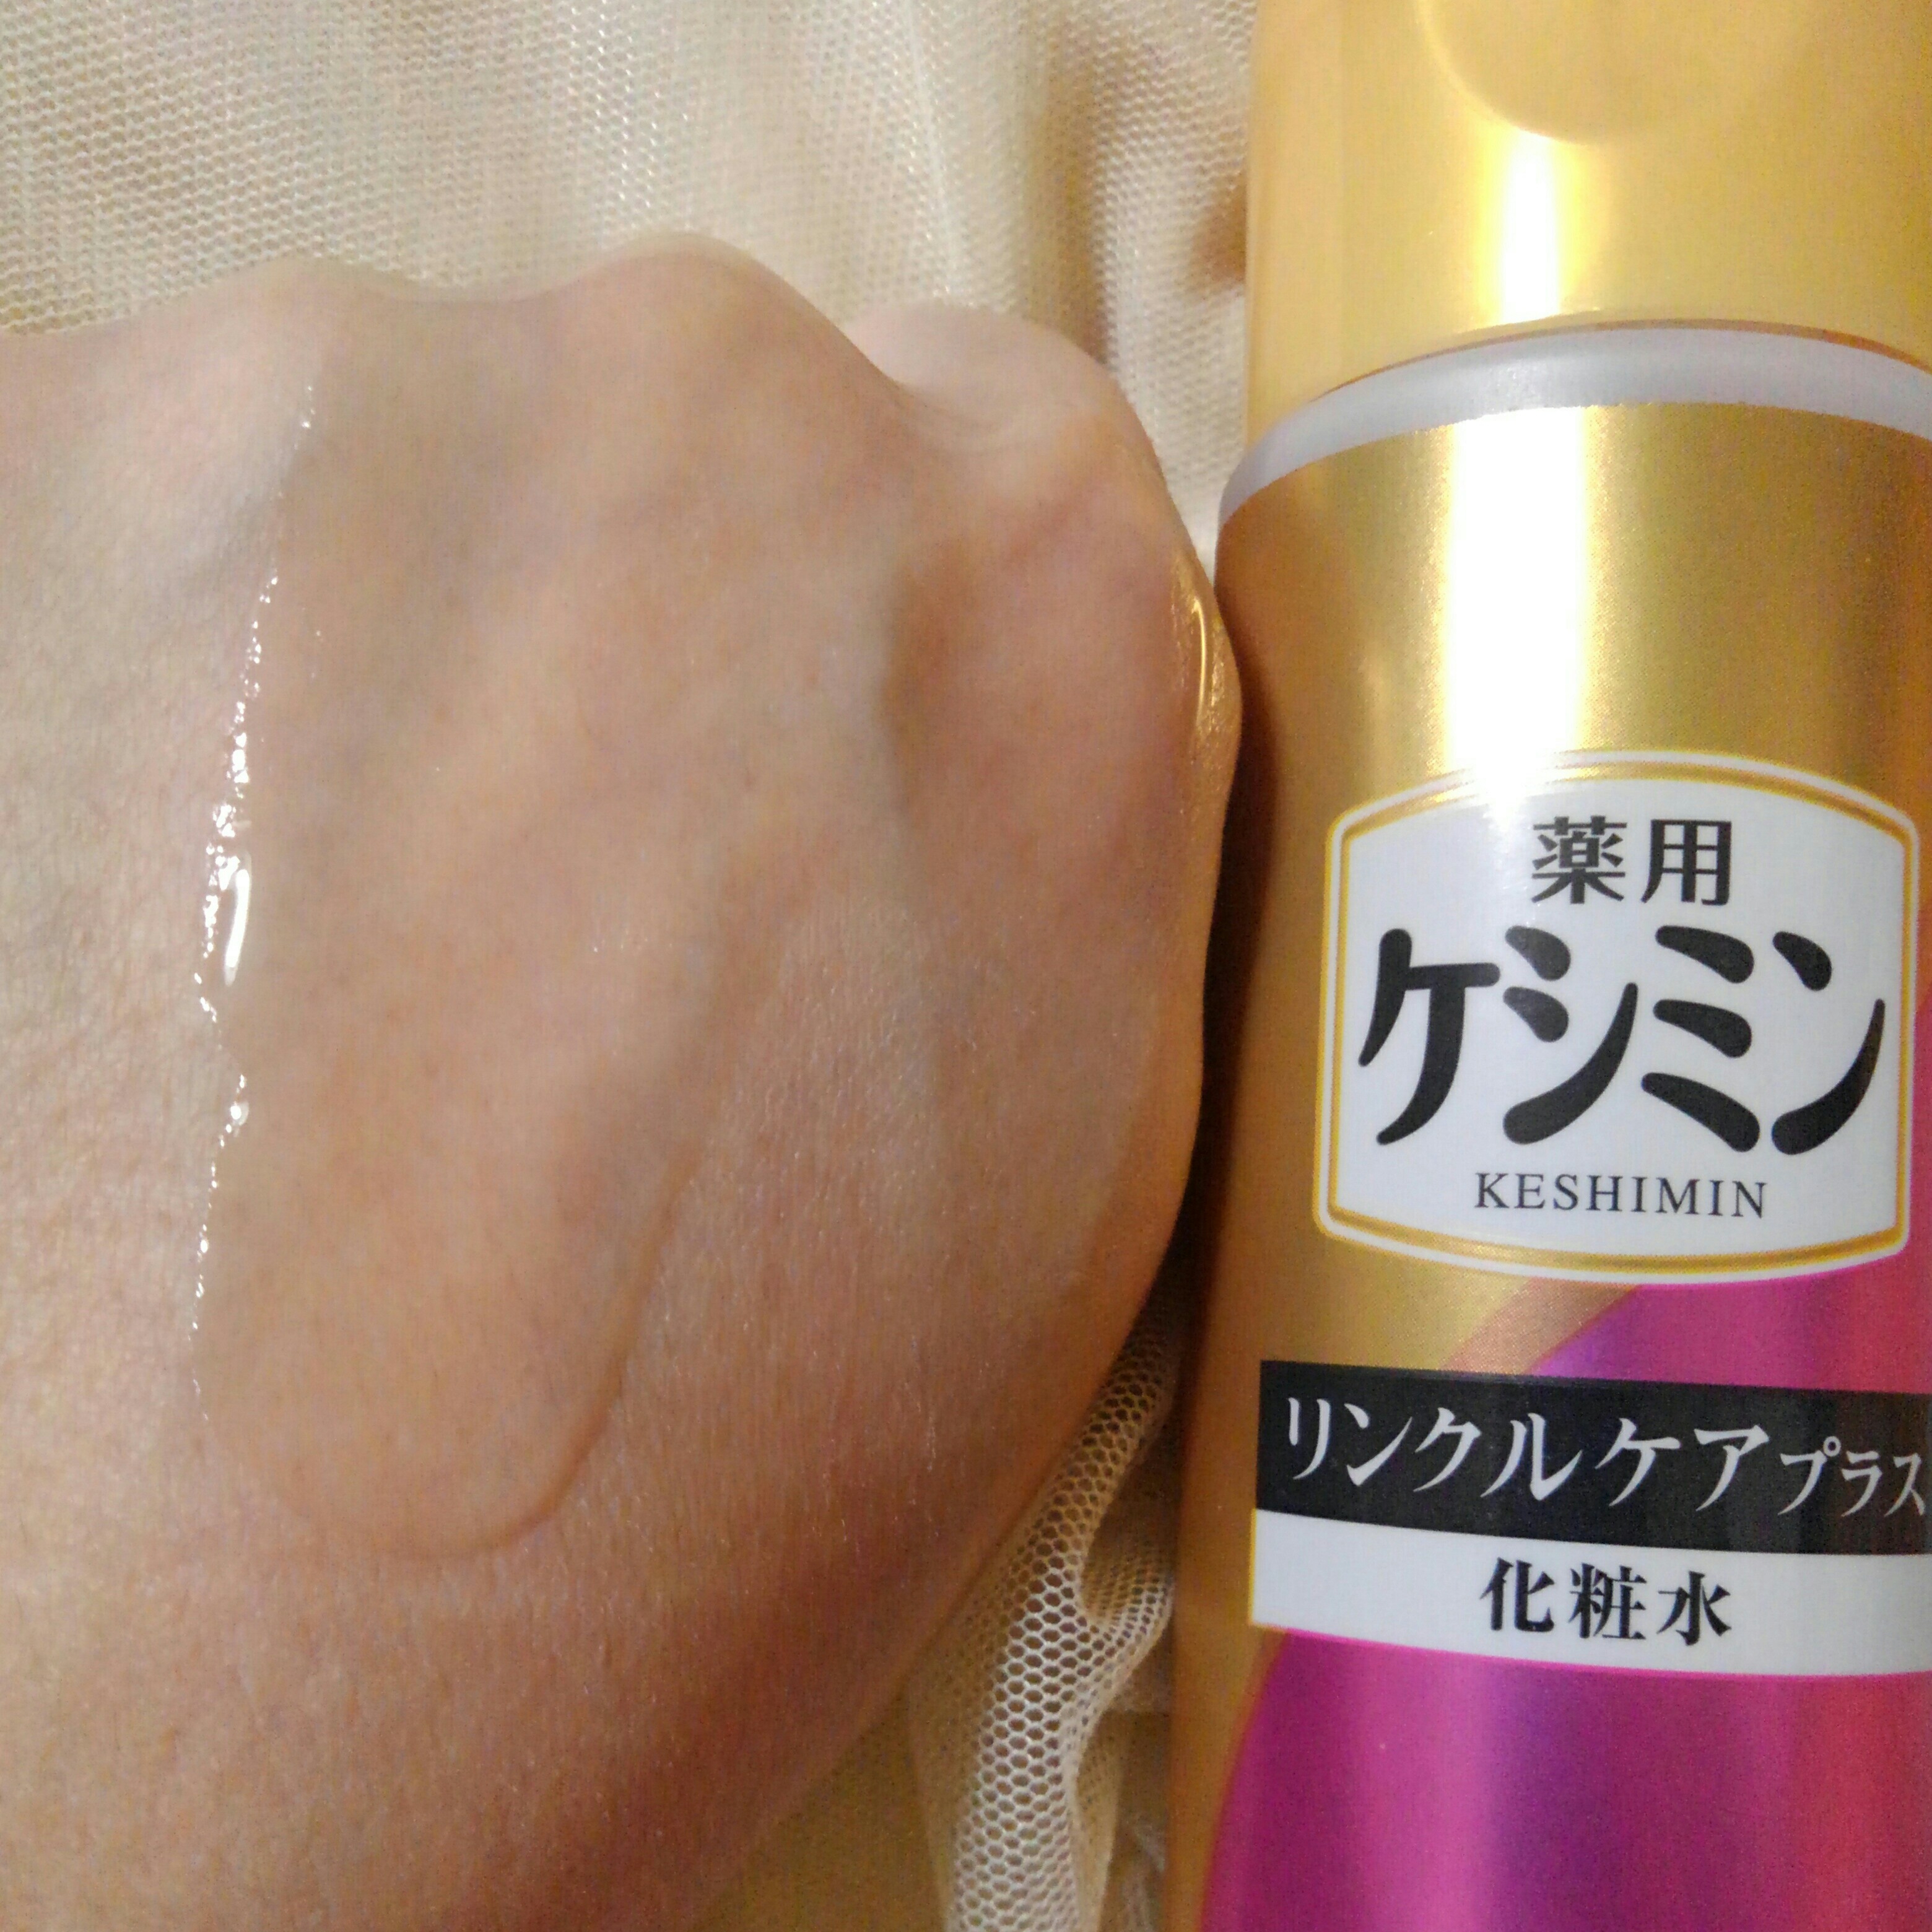 ケシミンリンクルケアプラス化粧水を使ったバドママ★さんのクチコミ画像4